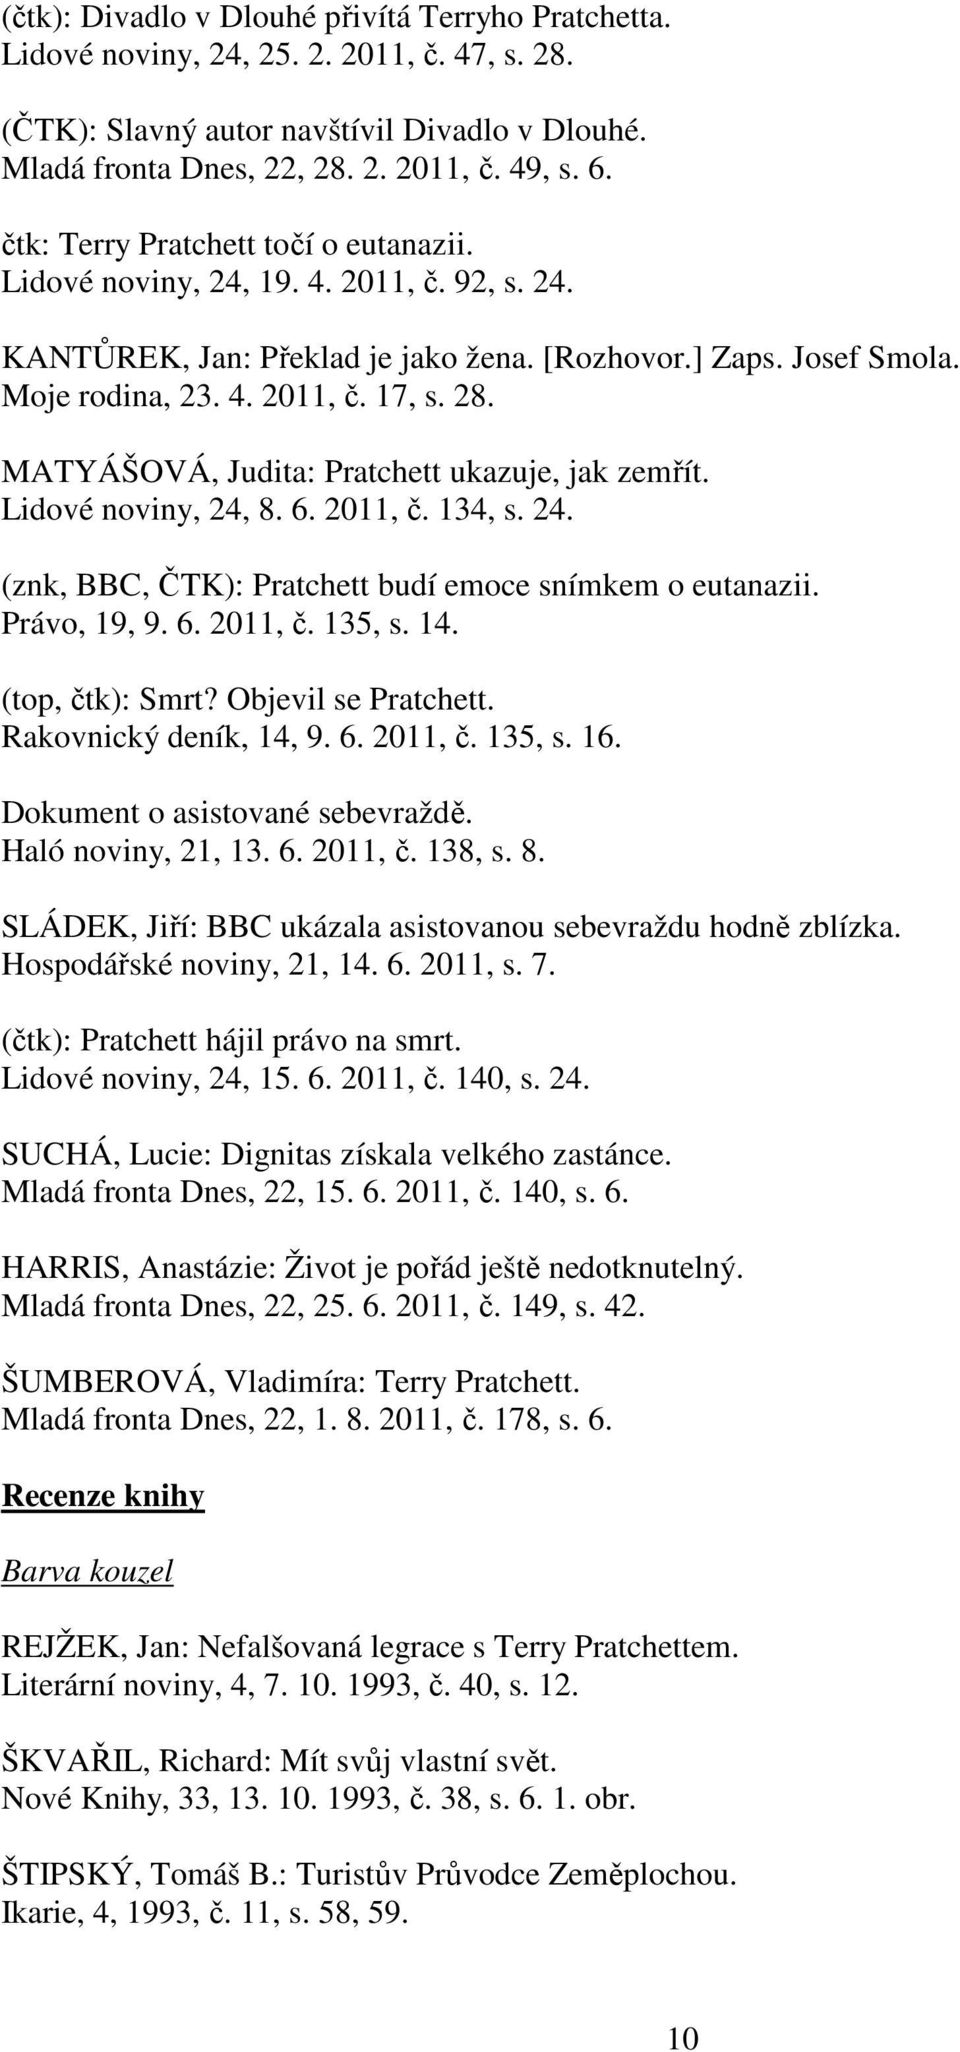 MATYÁŠOVÁ, Judita: Pratchett ukazuje, jak zemřít. Lidové noviny, 24, 8. 6. 2011, č. 134, s. 24. (znk, BBC, ČTK): Pratchett budí emoce snímkem o eutanazii. Právo, 19, 9. 6. 2011, č. 135, s. 14.